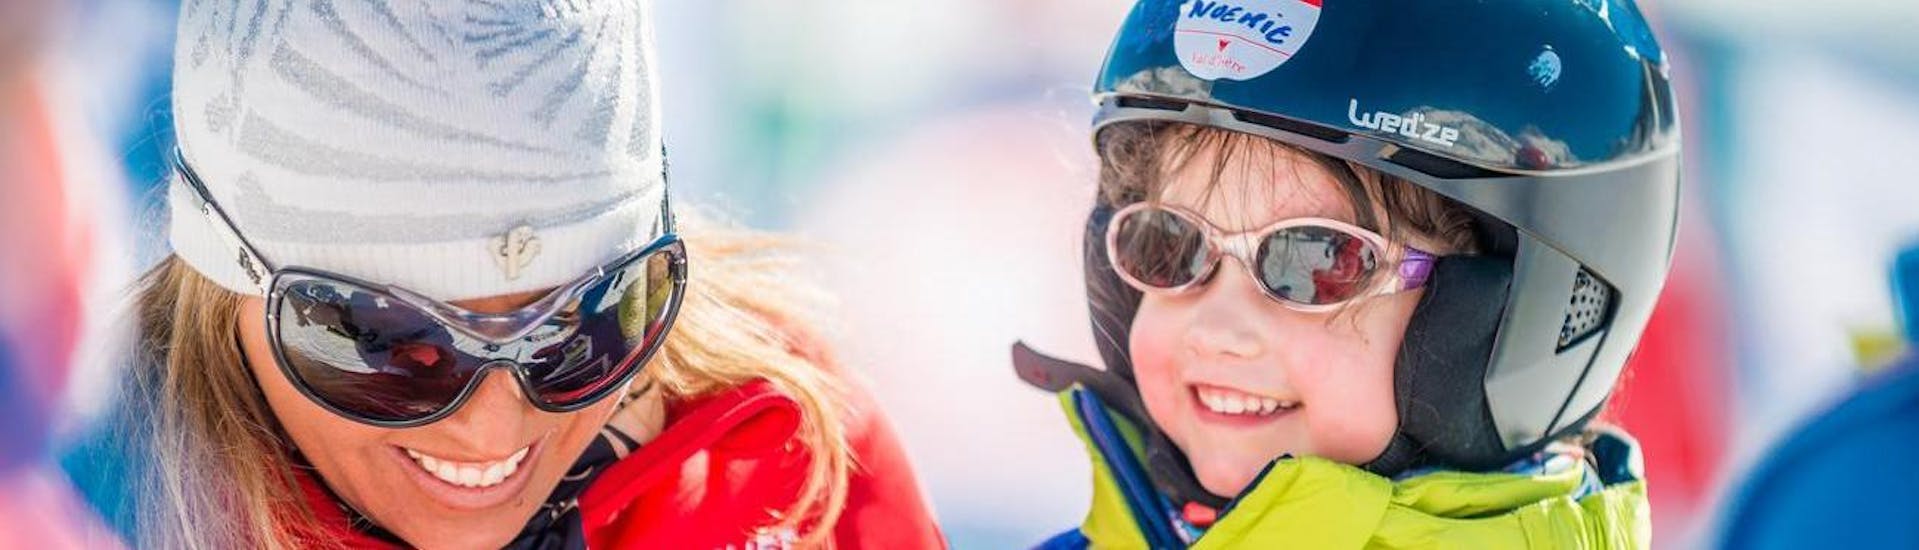 Un niño pequeño aprende a esquiar en las clases de esquí para niños "Snow Garden" (4-5 años) - Iniciación, organizadas por la escuela ESF Val d'Isère.